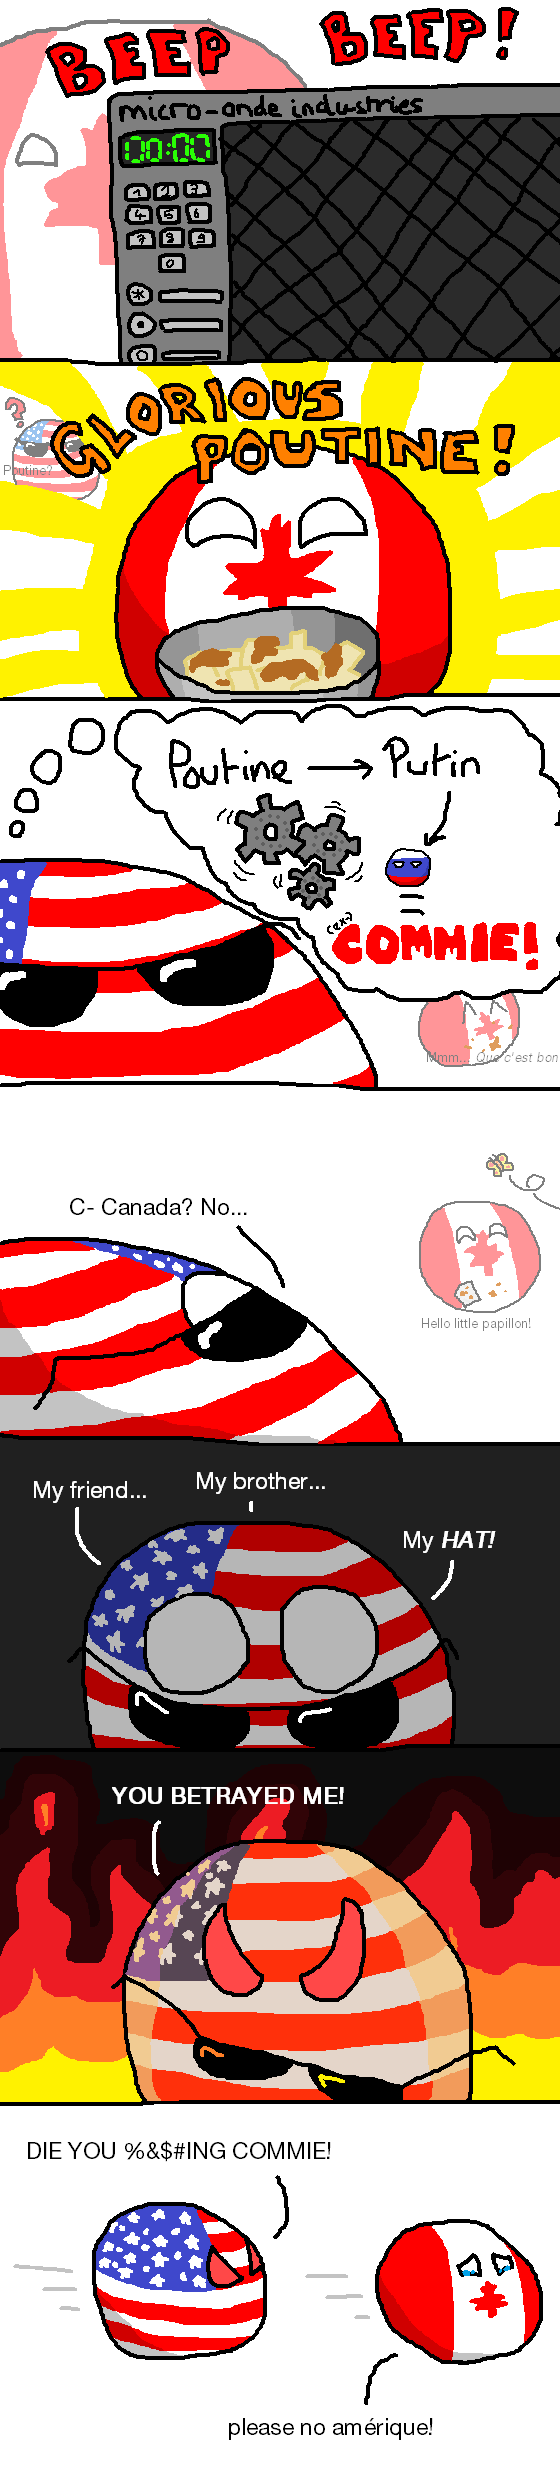 Canada no!